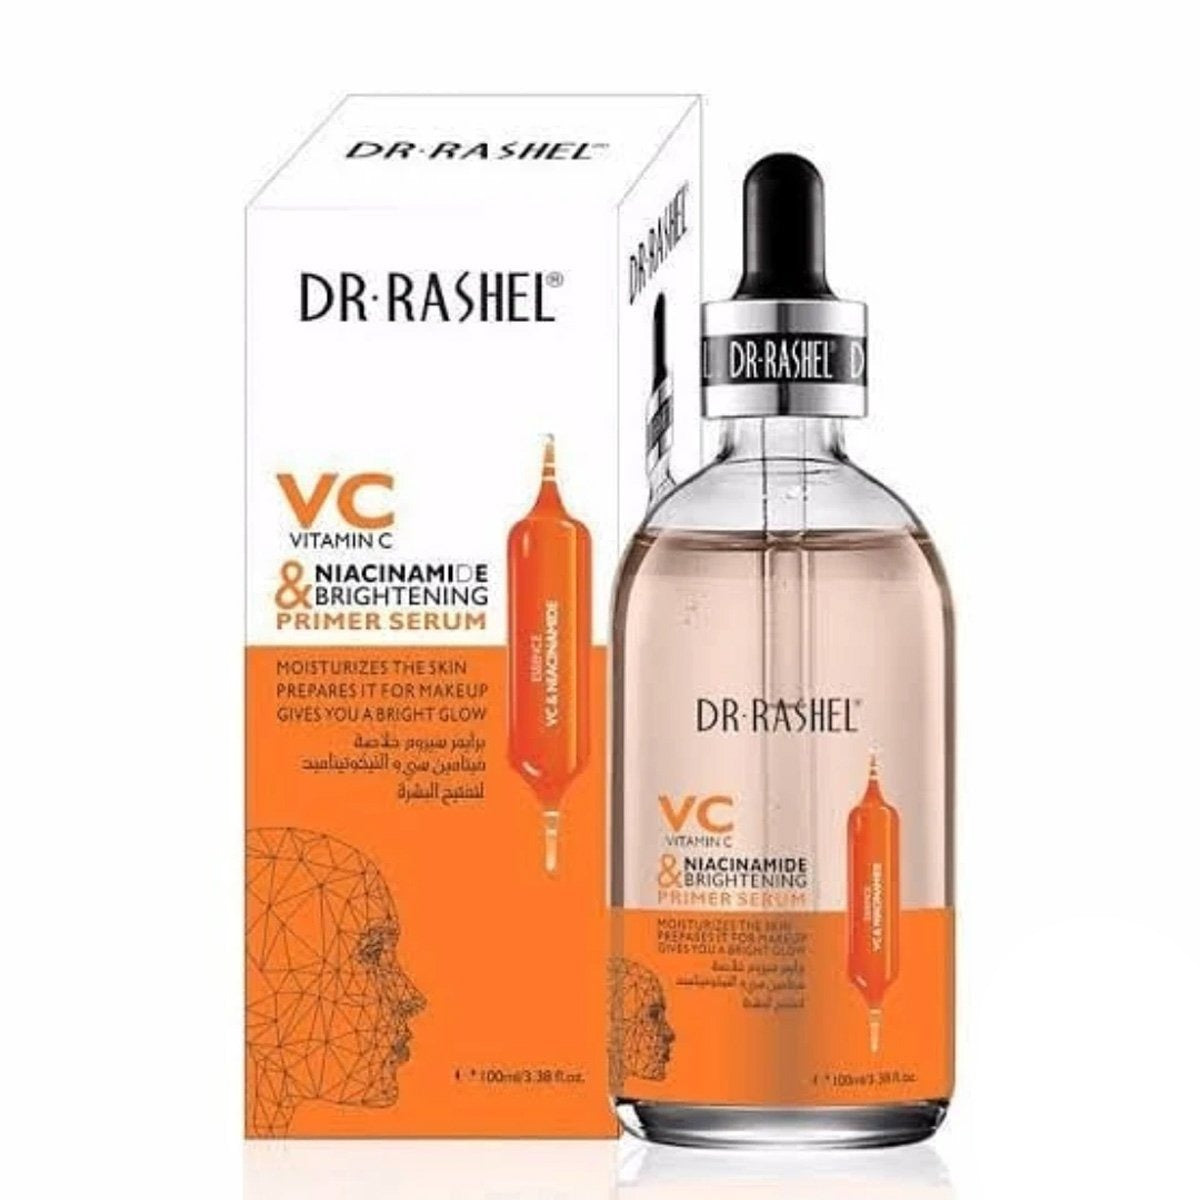 Dr Rashel Vitamin C Niacinamide & Brightening Primer Serum 100ml DRL-1488 freeshipping - lasertag.pk